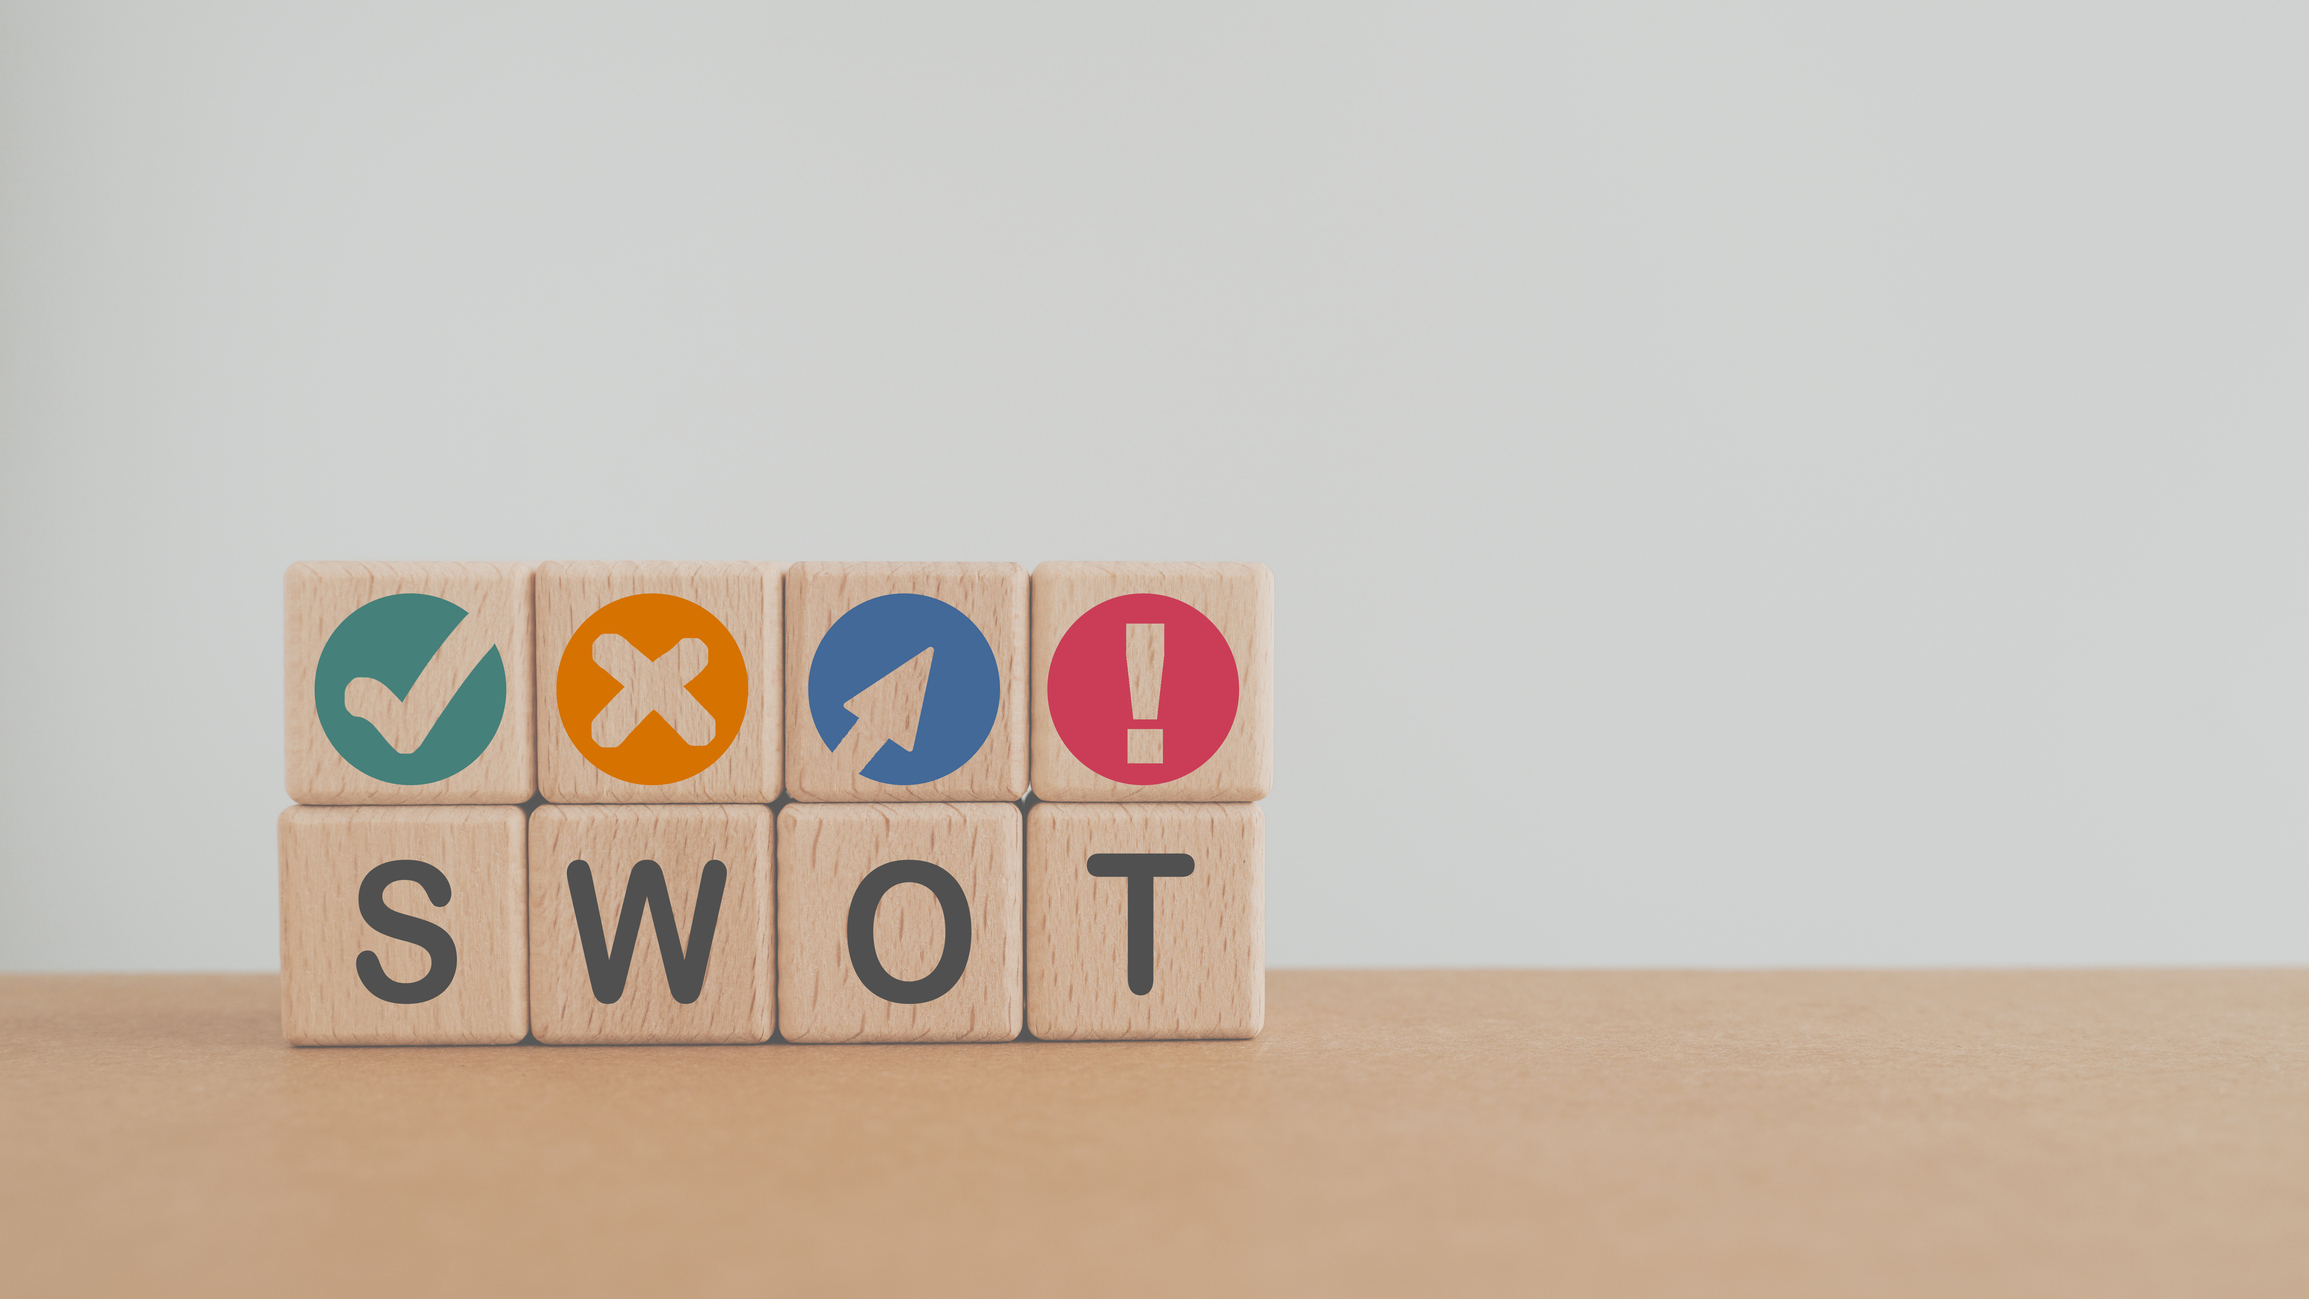 quatro cubos de madeira formam a sigla SWOT, e acima de cada um deles, mais 4 cubos tem símbolos de cada termo correspondente do SWOT.